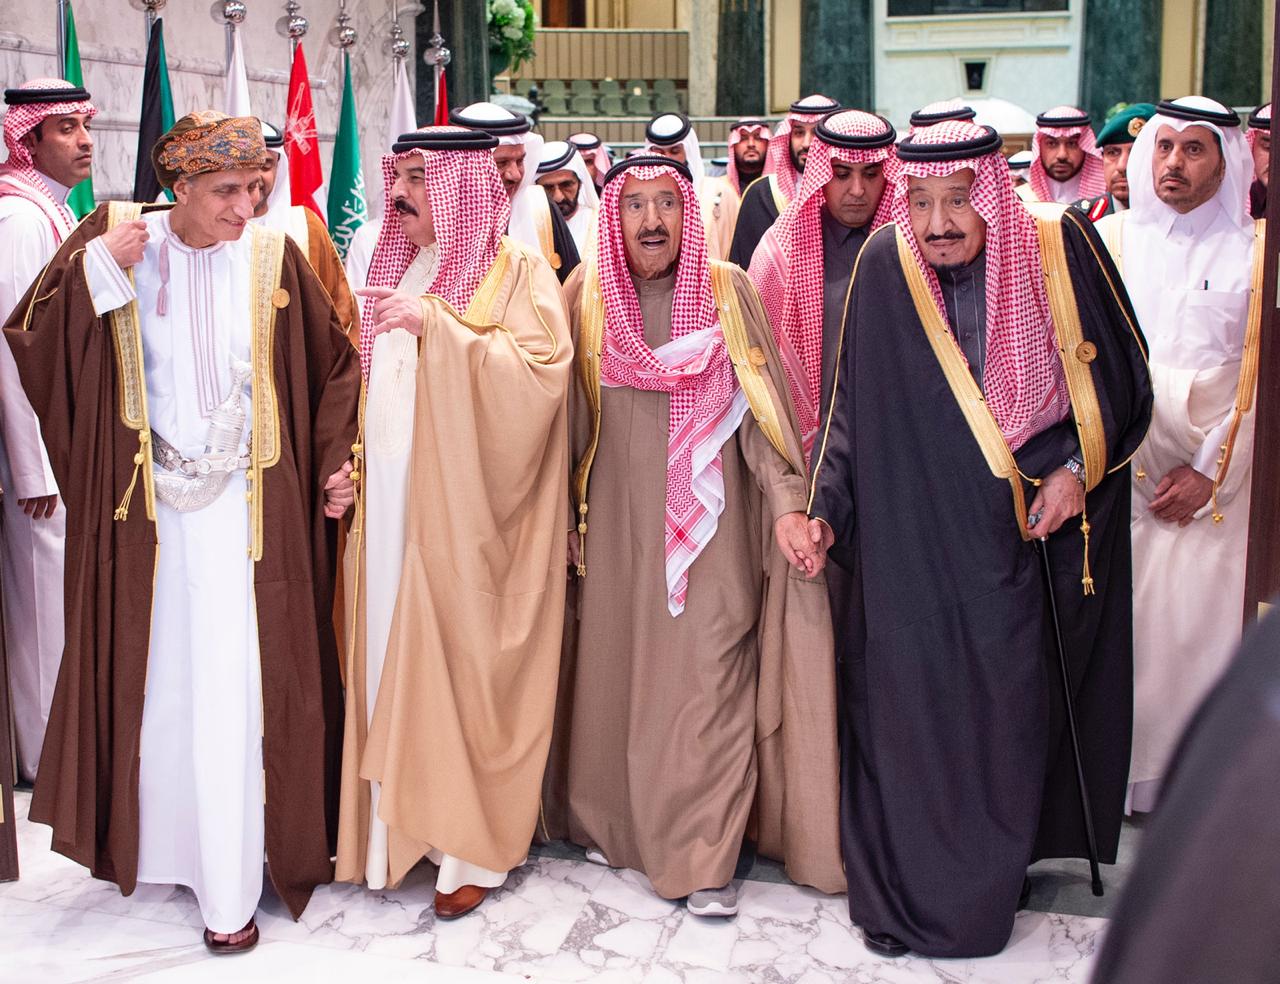 الملك سلمان في ختام قمة الخليج : نتعاون على البر والتقوى ويدنا واحدة